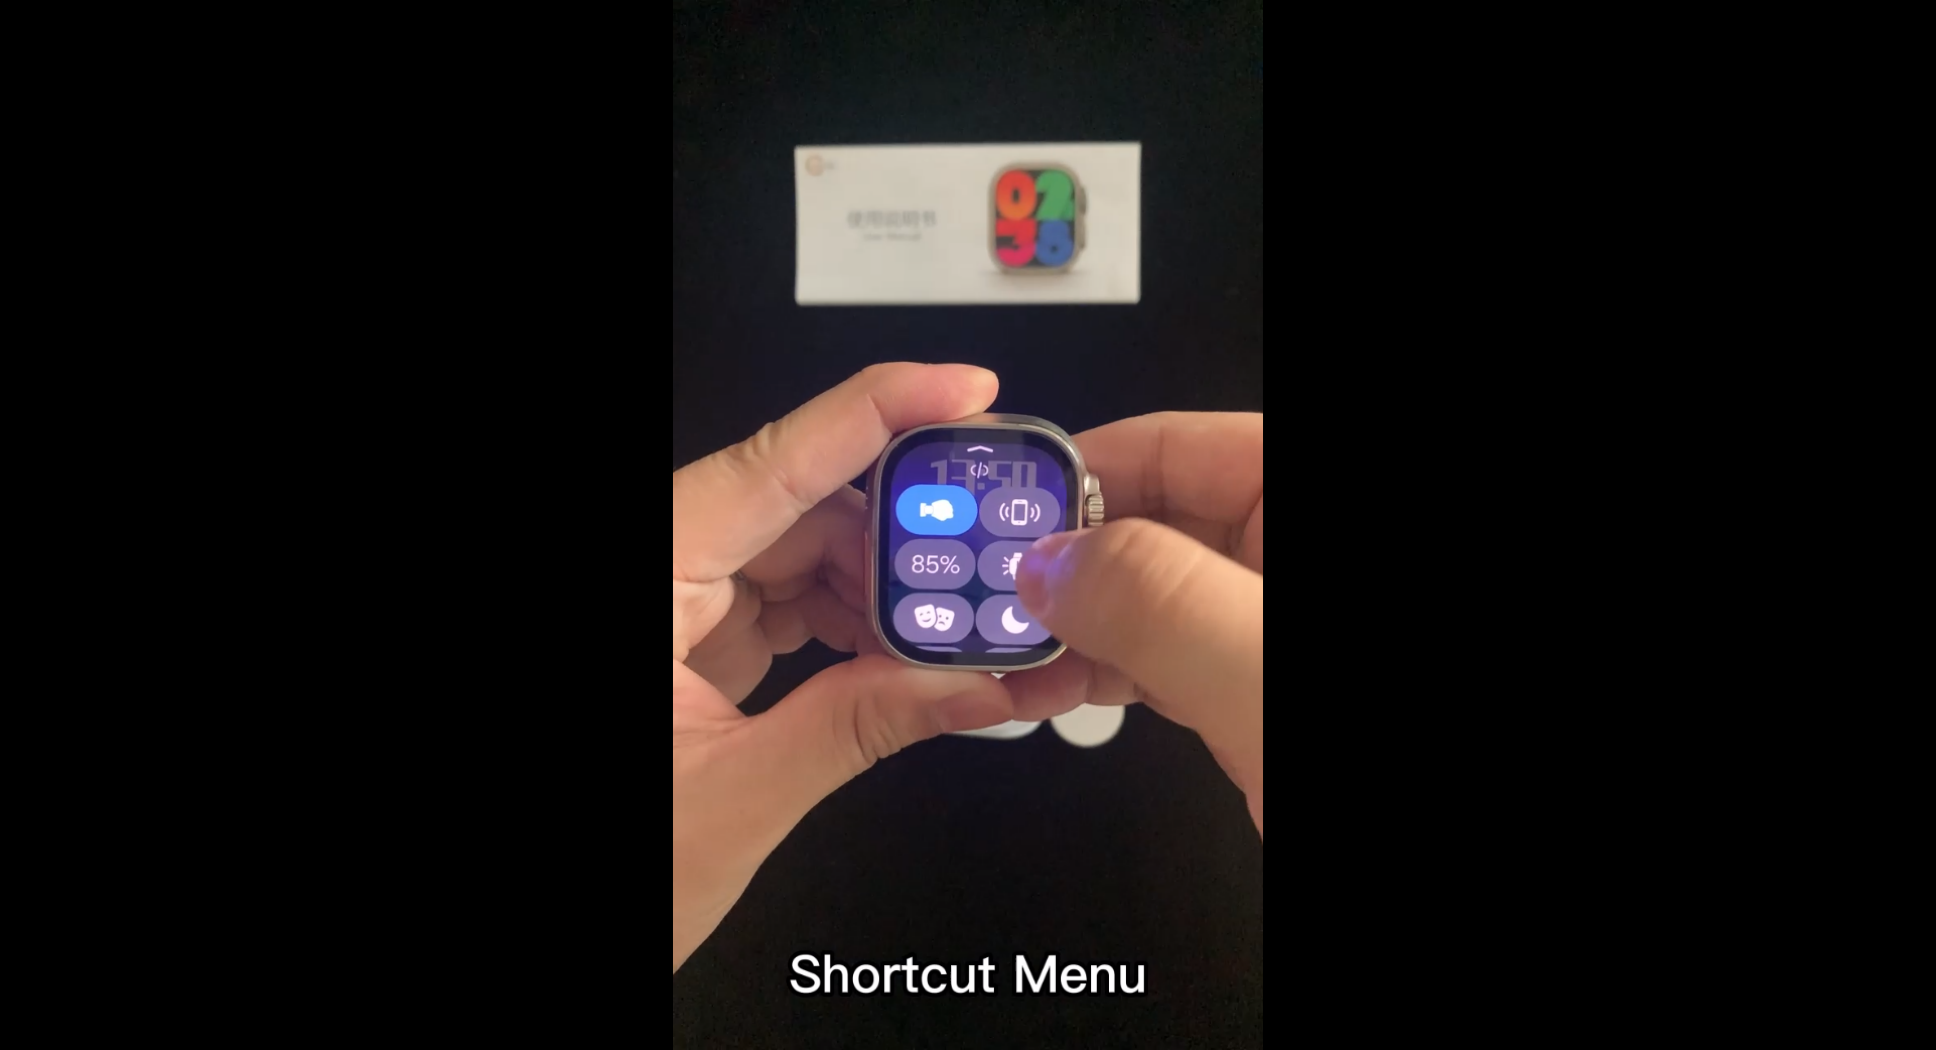 JS8 Pro Max Une montre intelligente avec un écran AMOLED.-Shenzhen Shengye Technology Co., Ltd